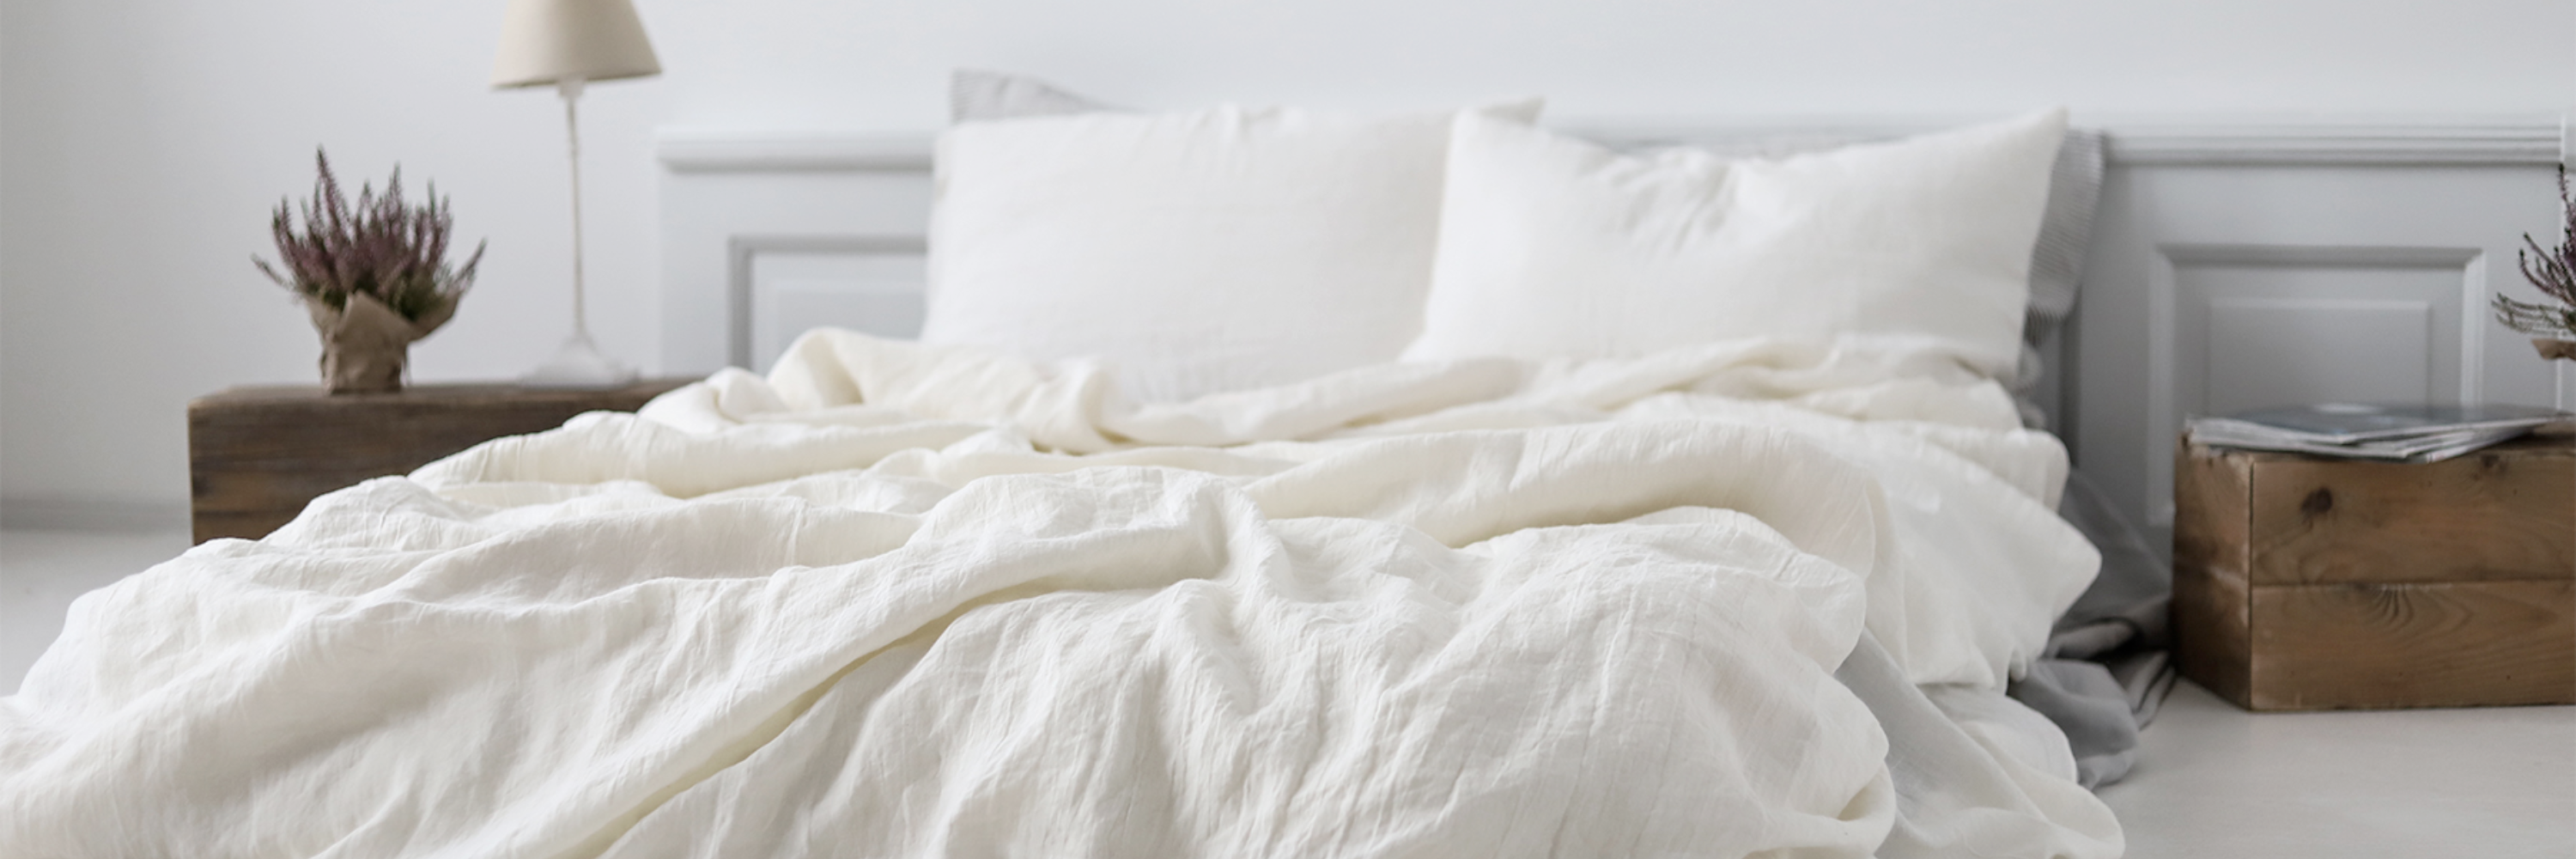 White linen bedding set